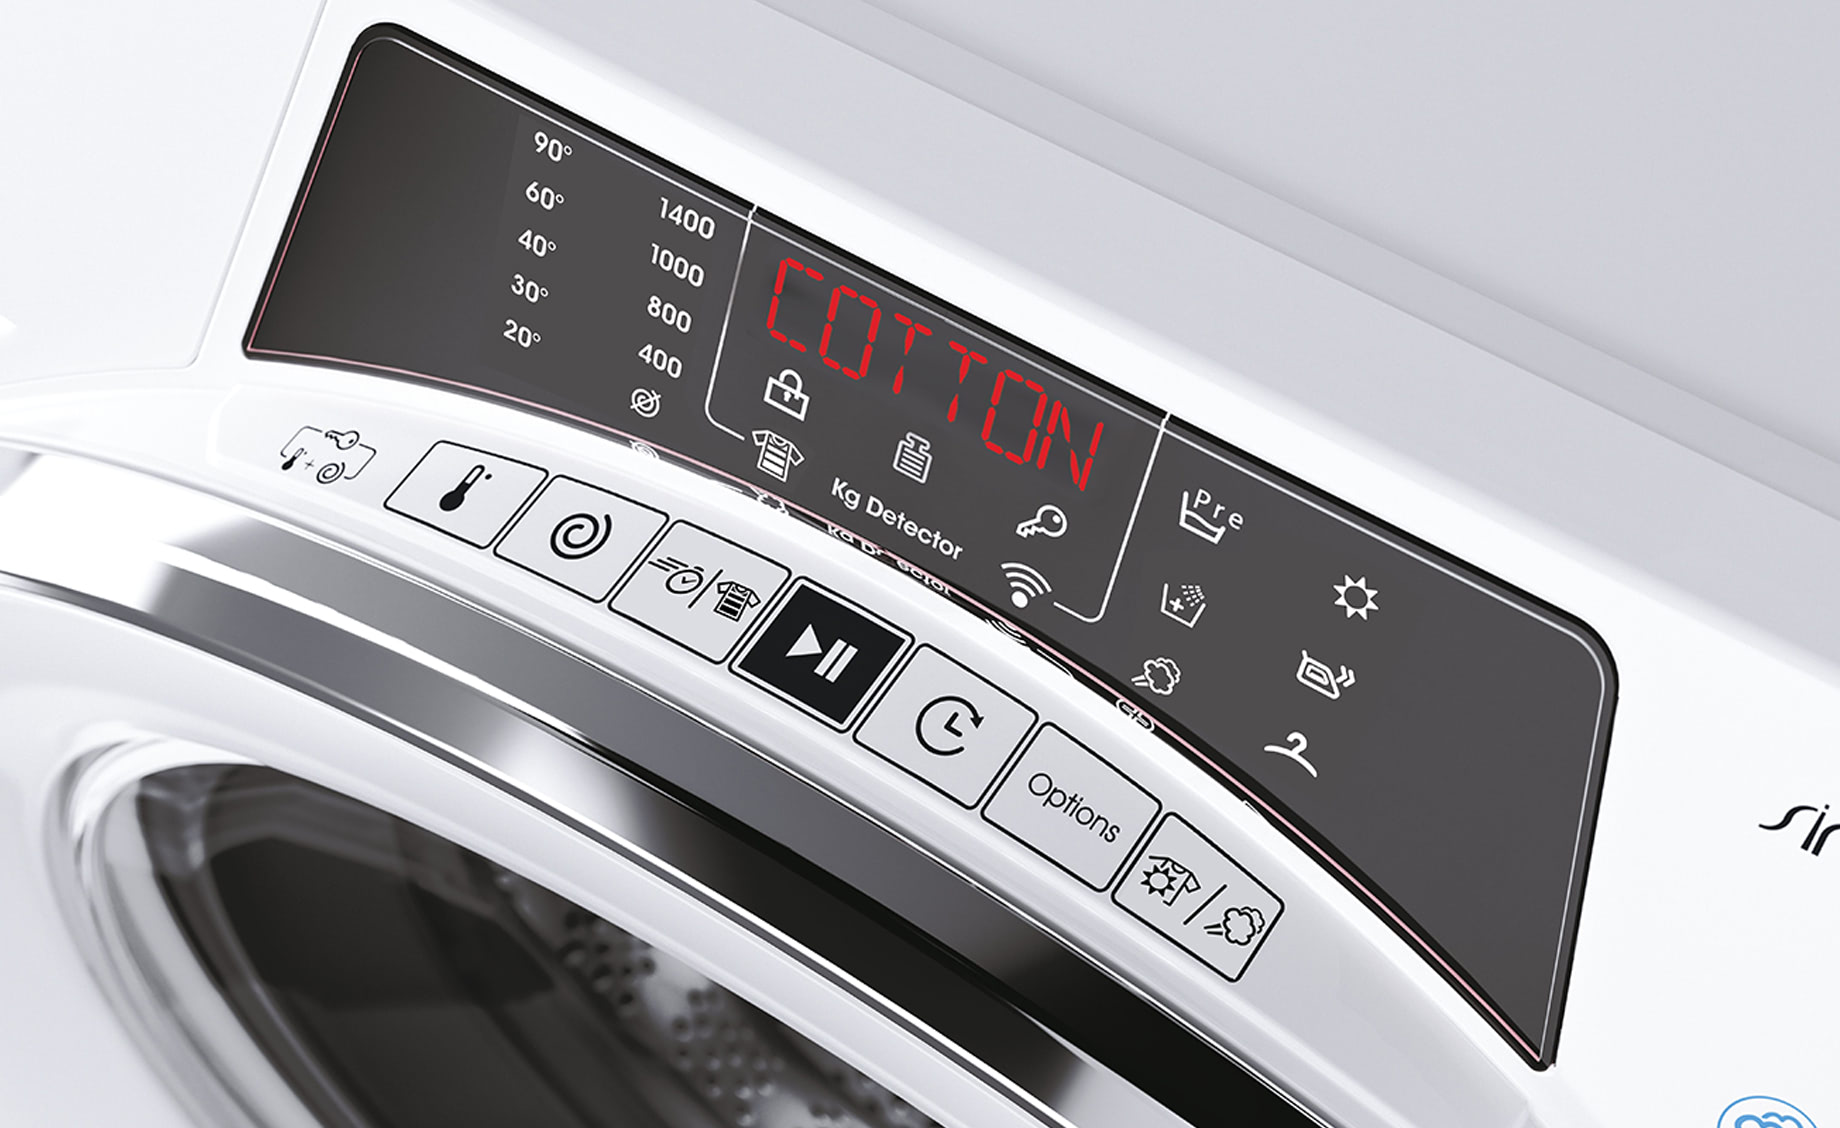 Candy ROW 4856 DWMCE/1-S mašina za pranje i sušenje veša